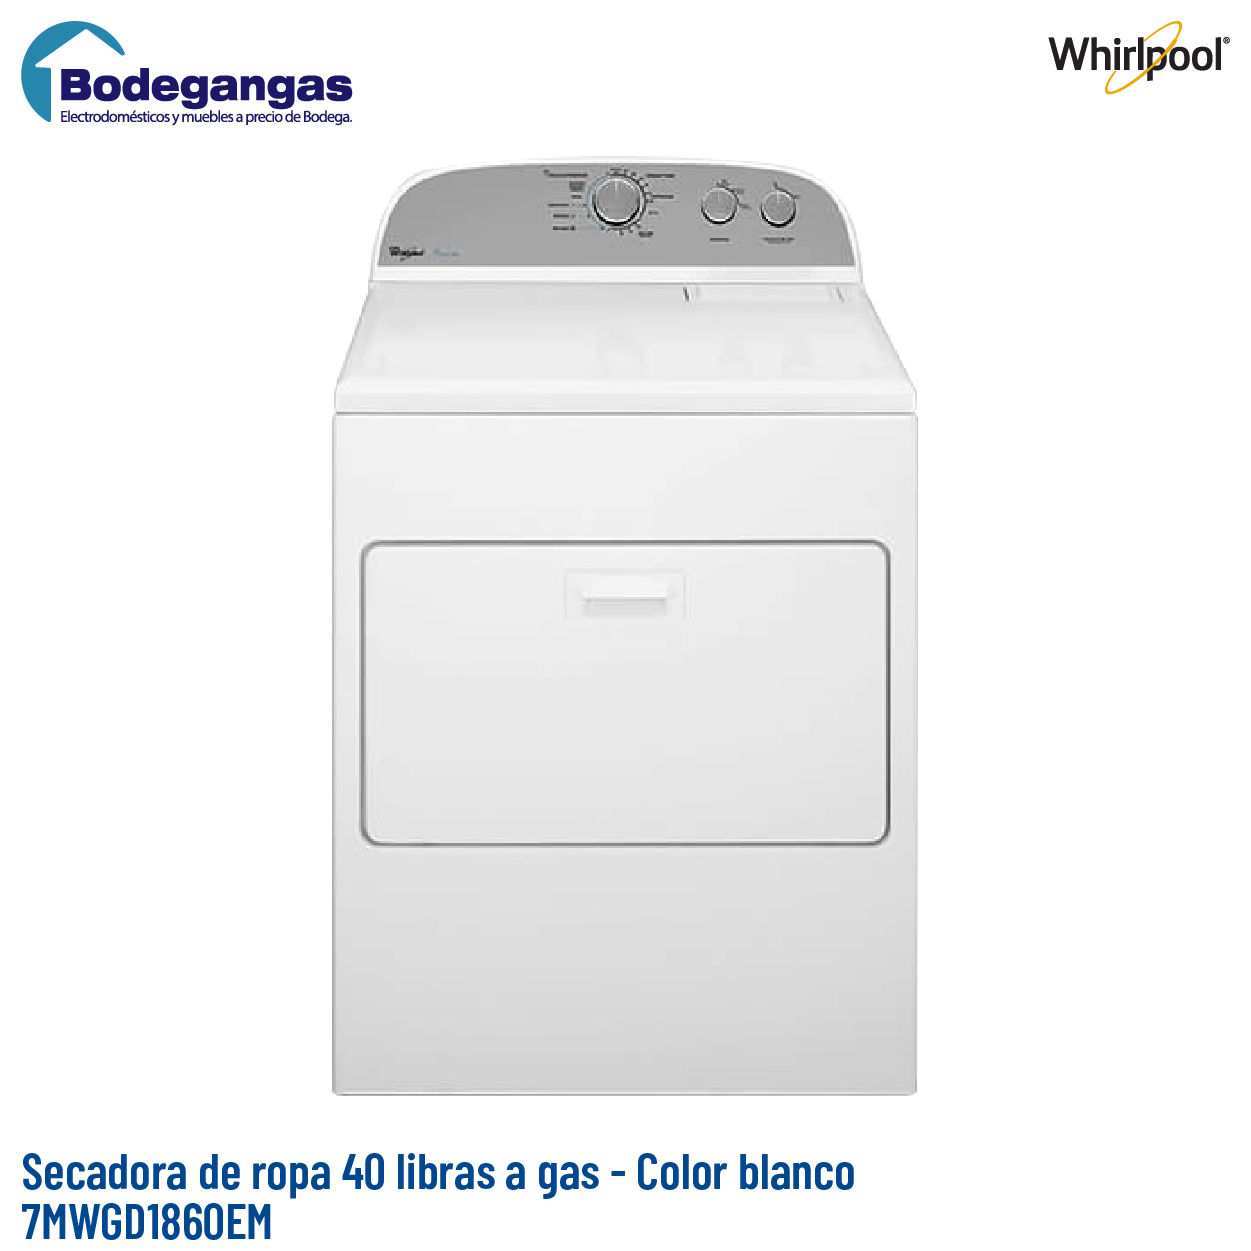 Secadora de ropa 40 libras a 7MWGD1860EM | BodeGangas